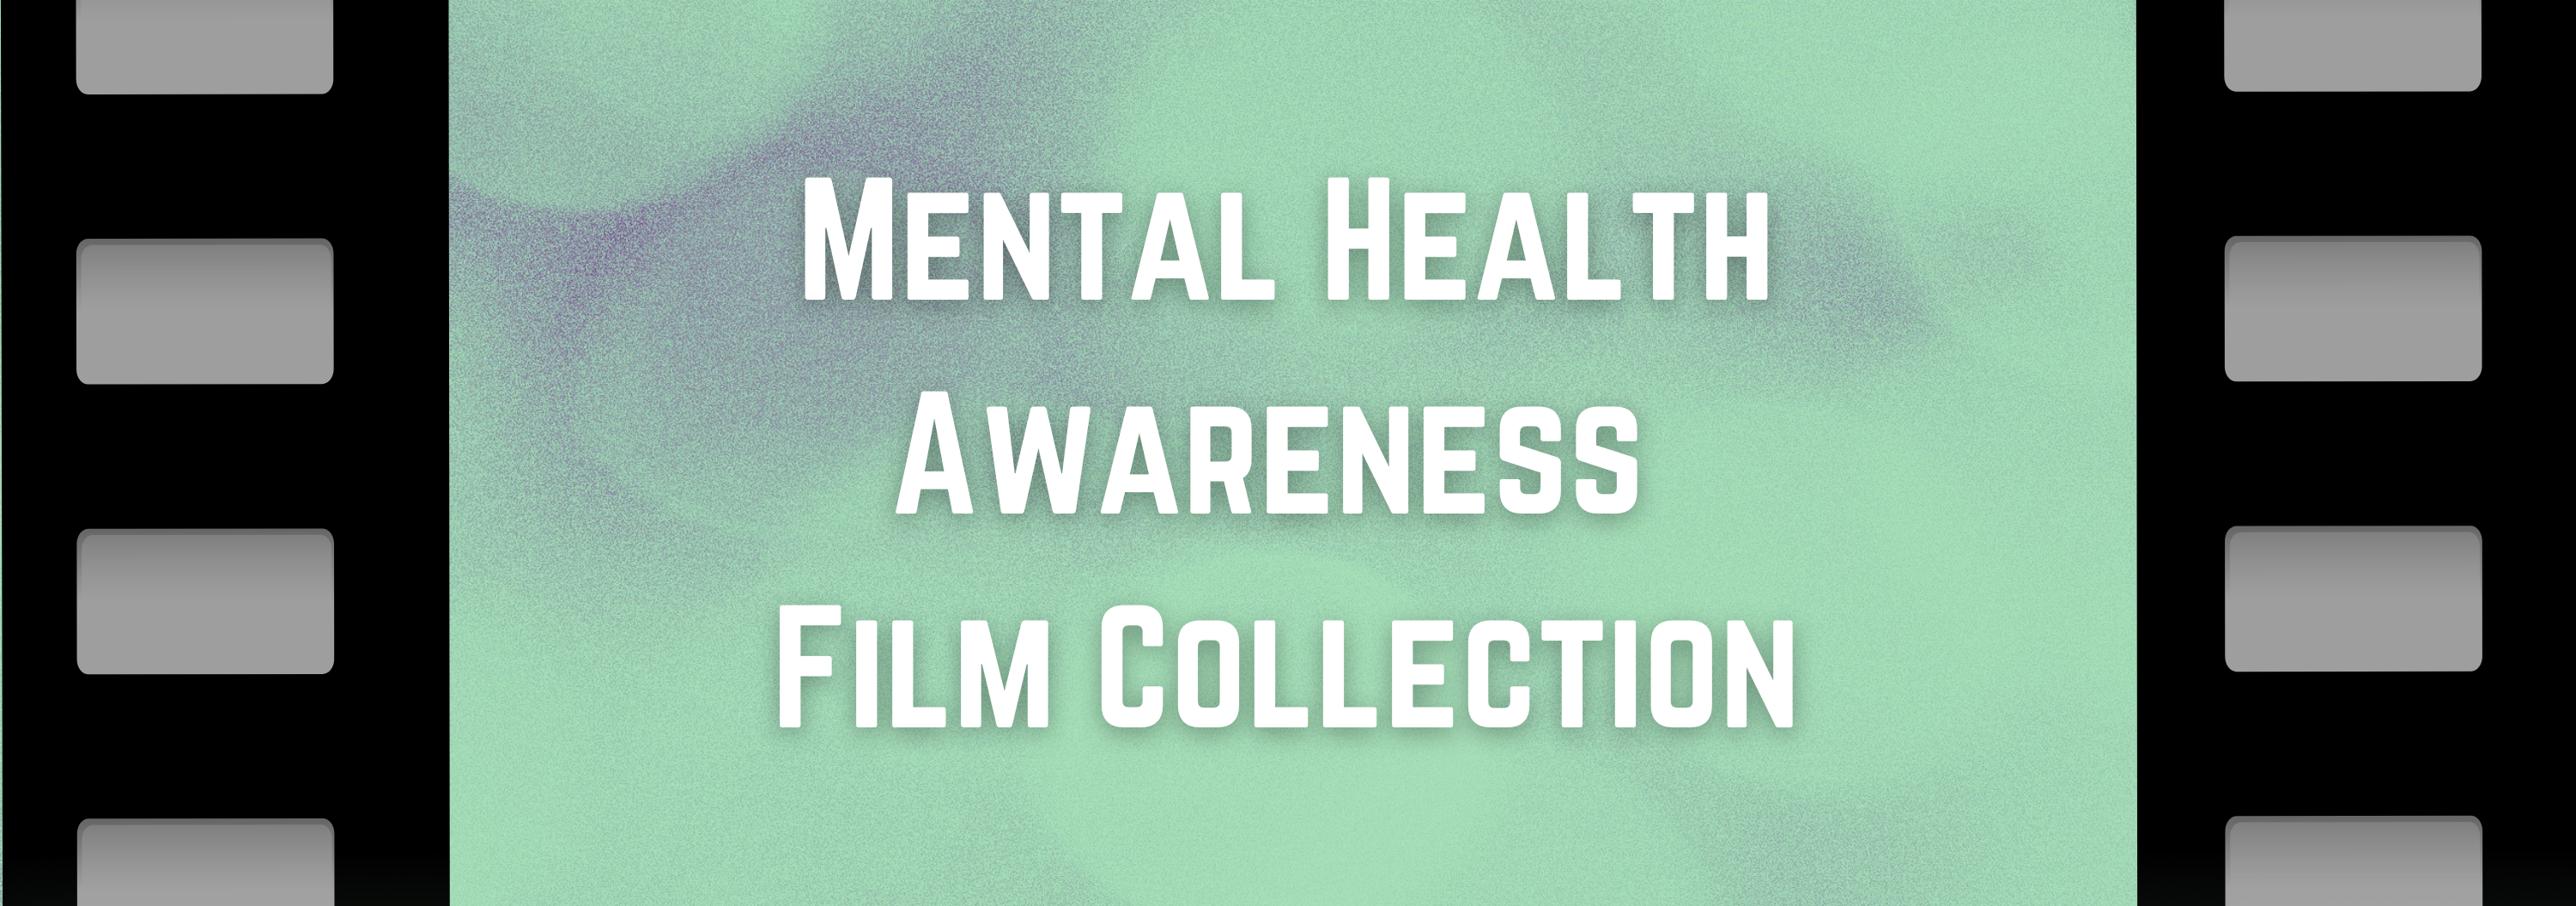 Mental Health Awareness Film